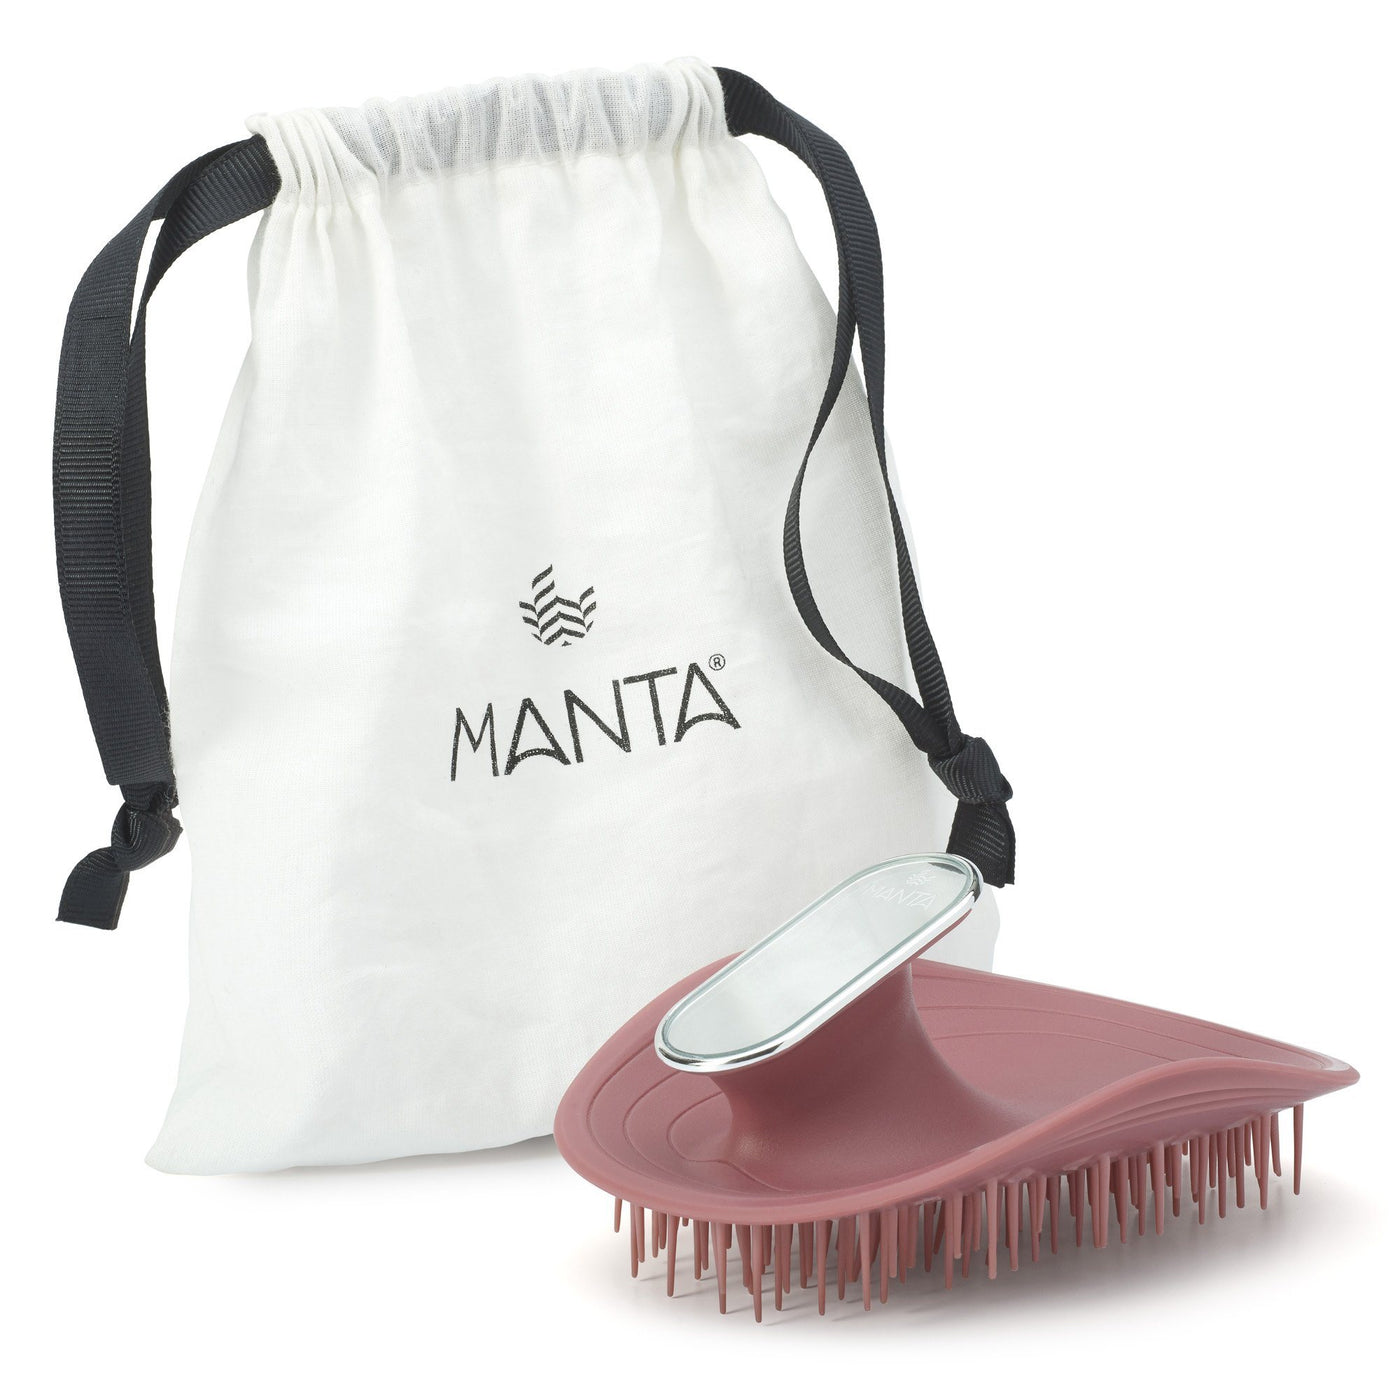 MANTA HAIR BRUSH - Cassis with mirror | Manta hair brush | LOSHEN & CREM